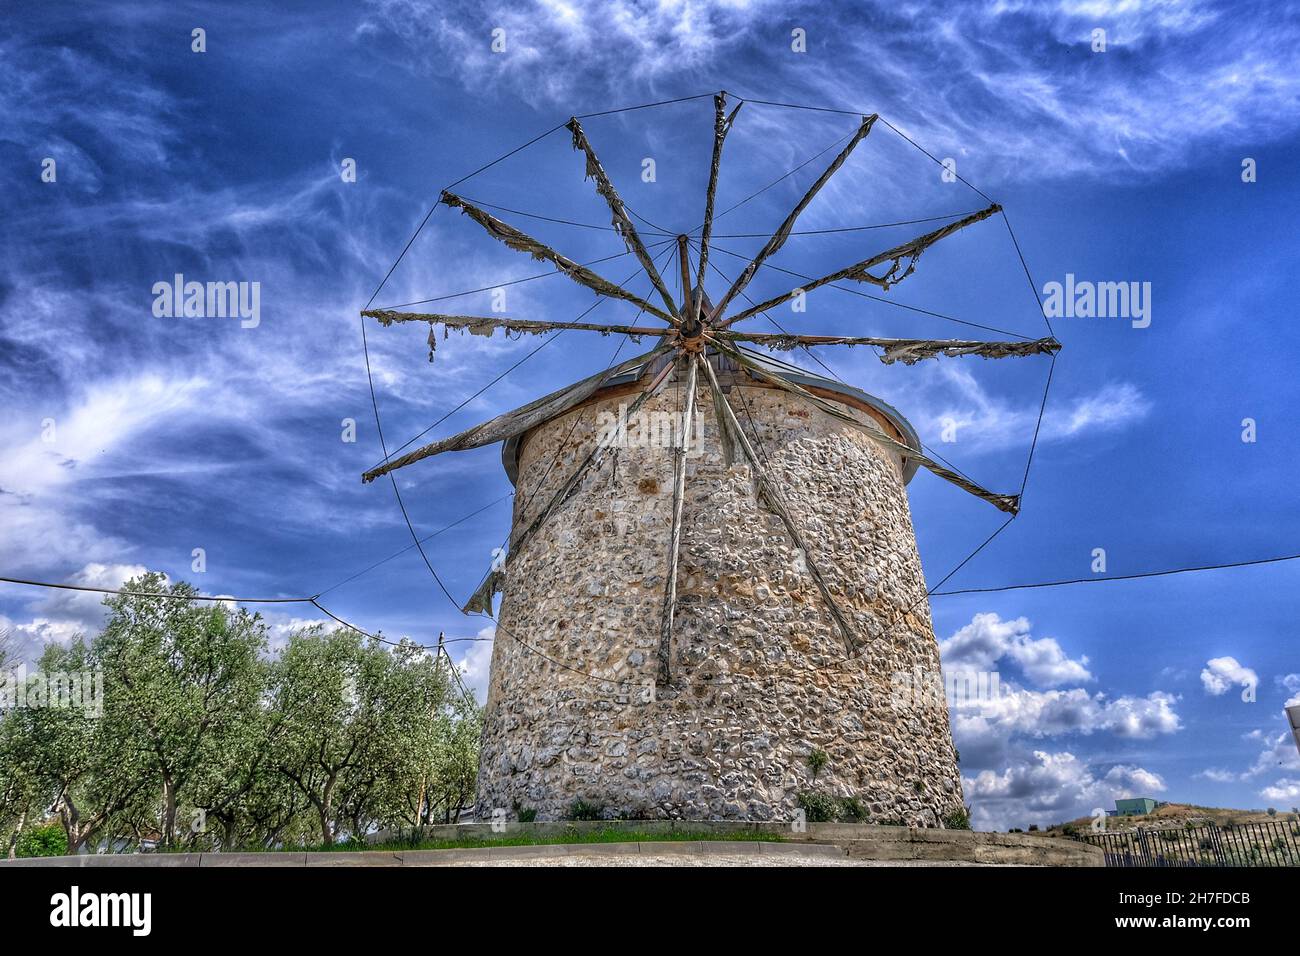 Alte Windmühle in Golyazi (uluabat) bursa und es Hauptstruktur aus Stein und mit hölzernen Propeller mit herrlichen blauen Himmel und grünen Baum Stockfoto